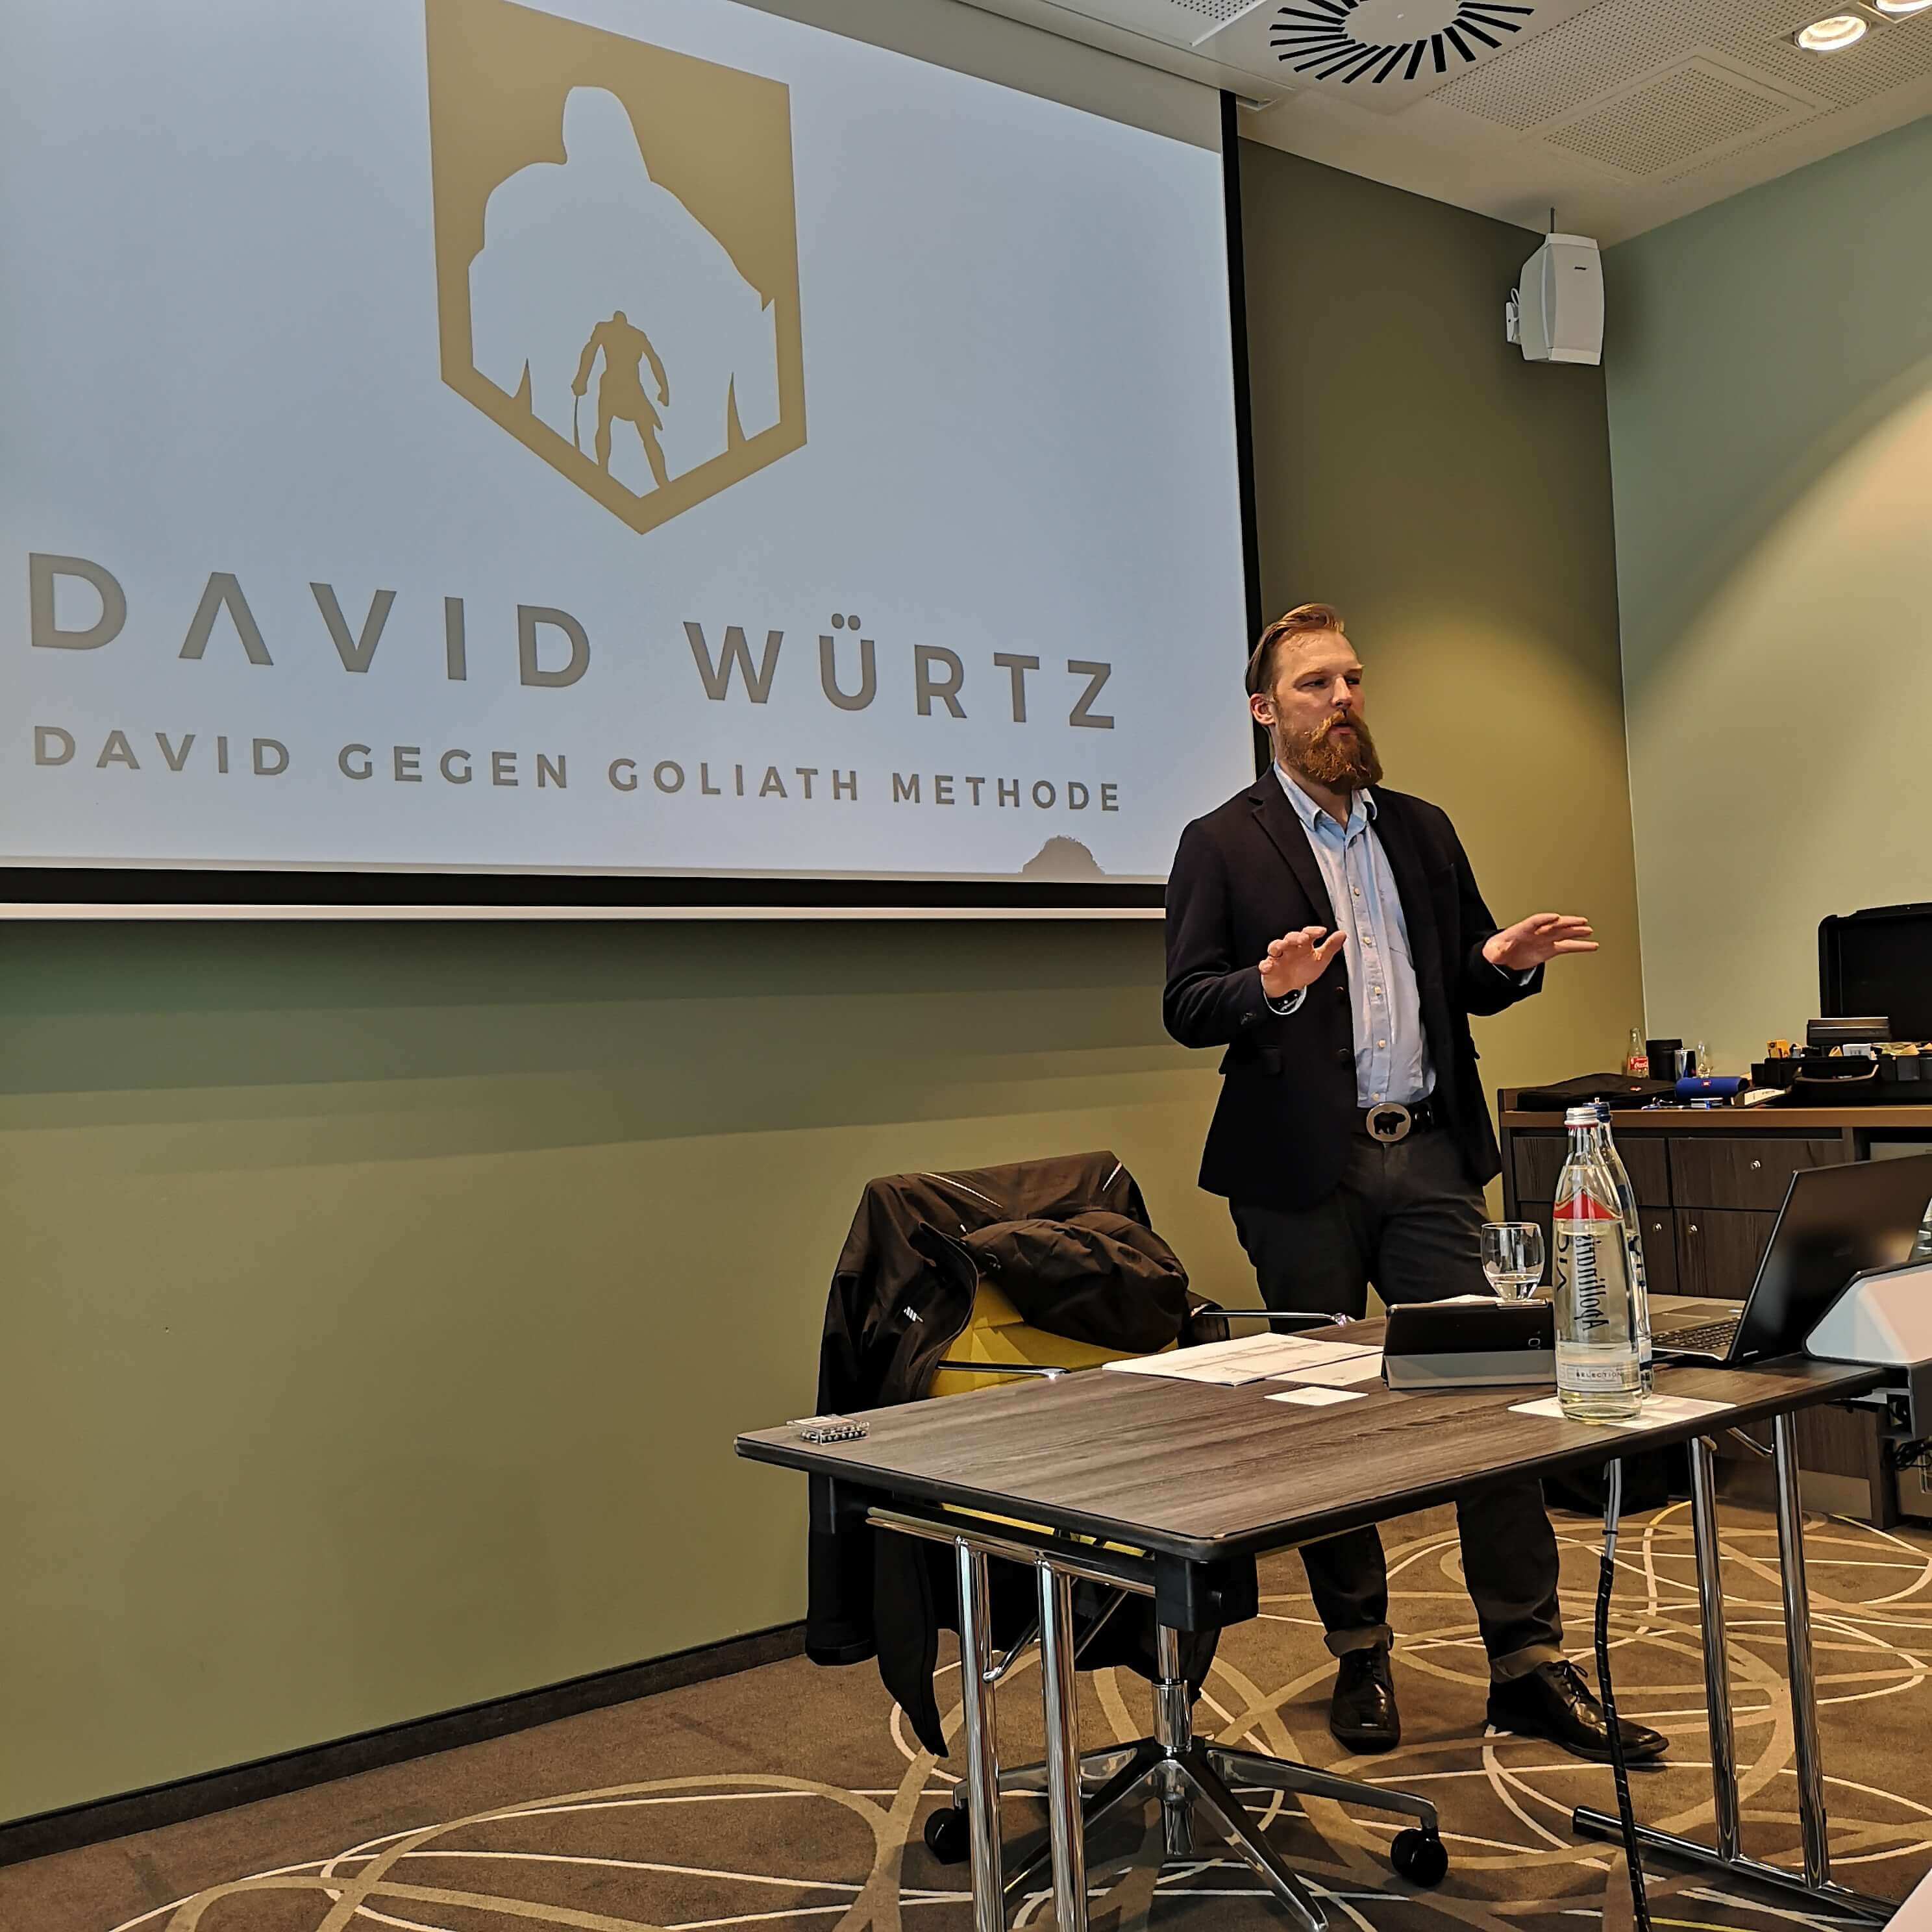 Vortrag David Würtz | "David gegen Goliath"-Methode Resilienz / Stressbewältigung